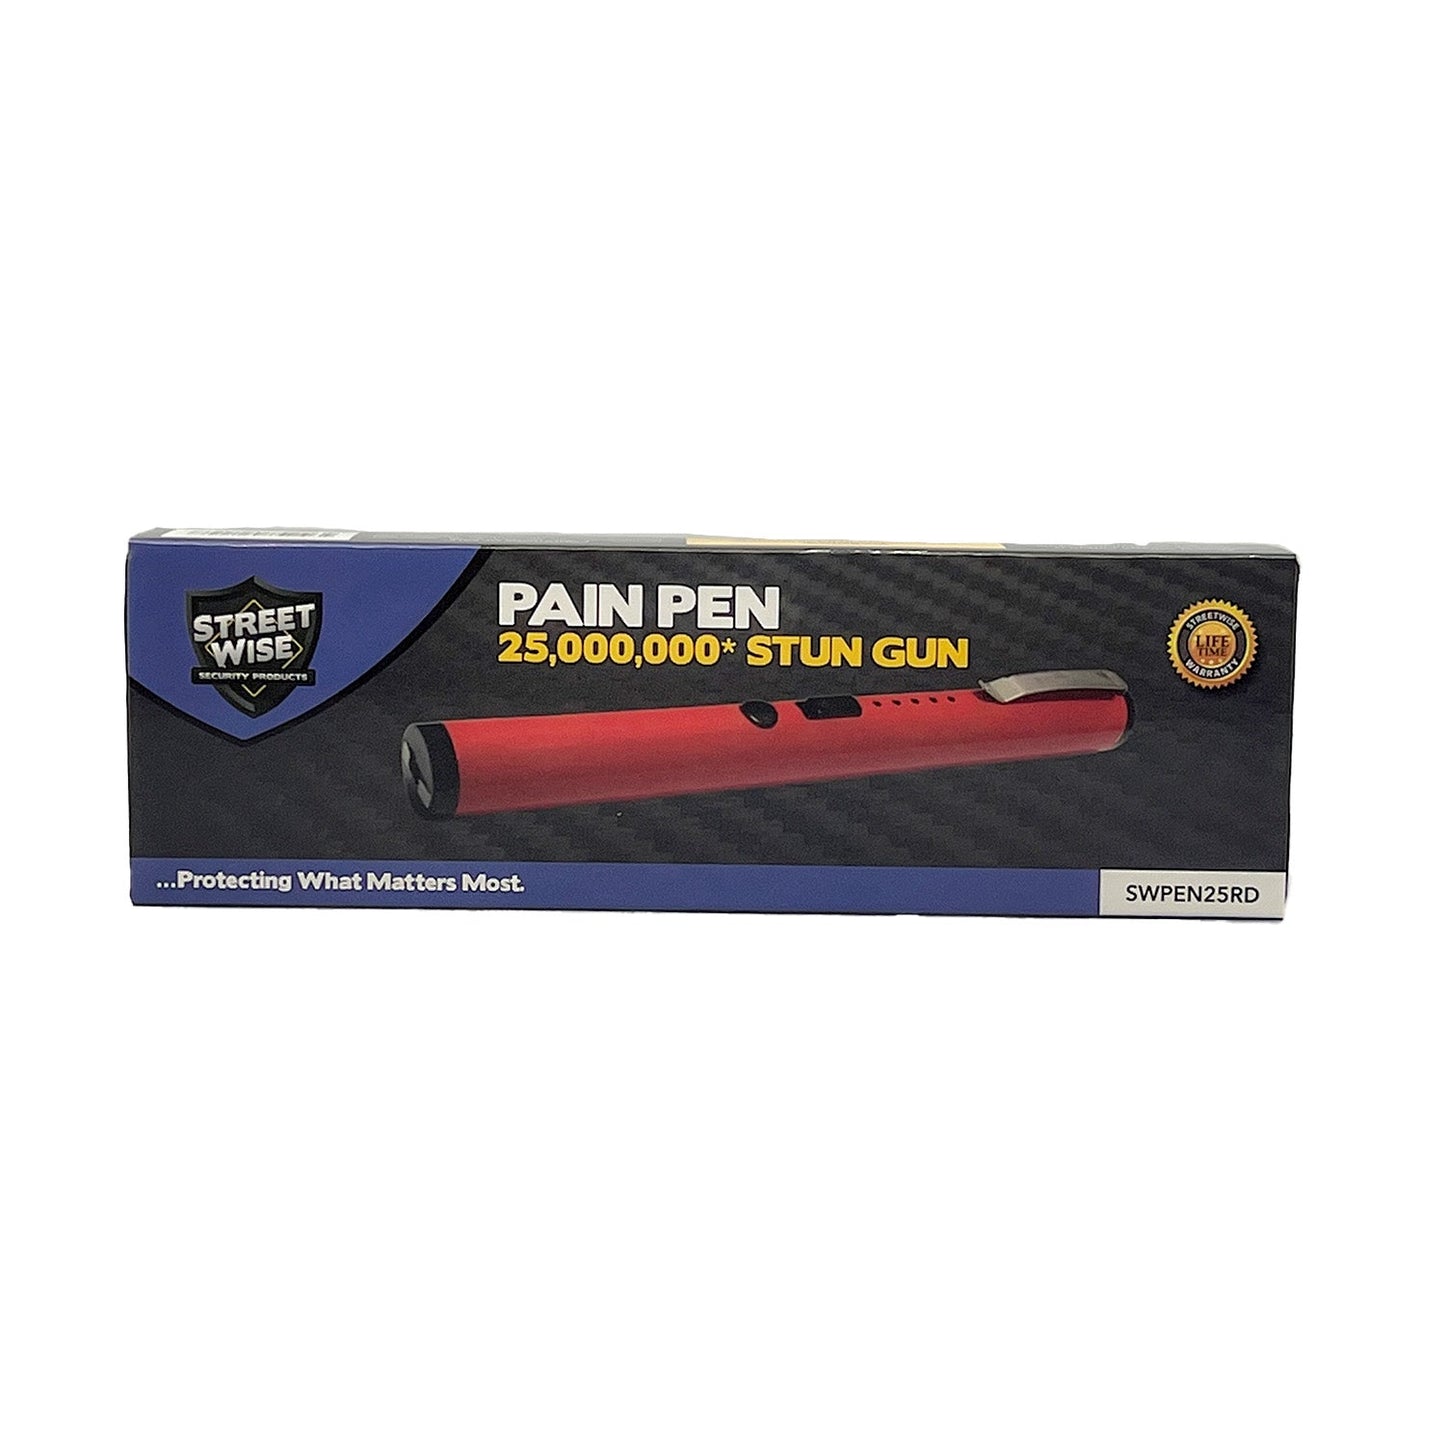 Pain Pen 25,000,000* Stun Gun